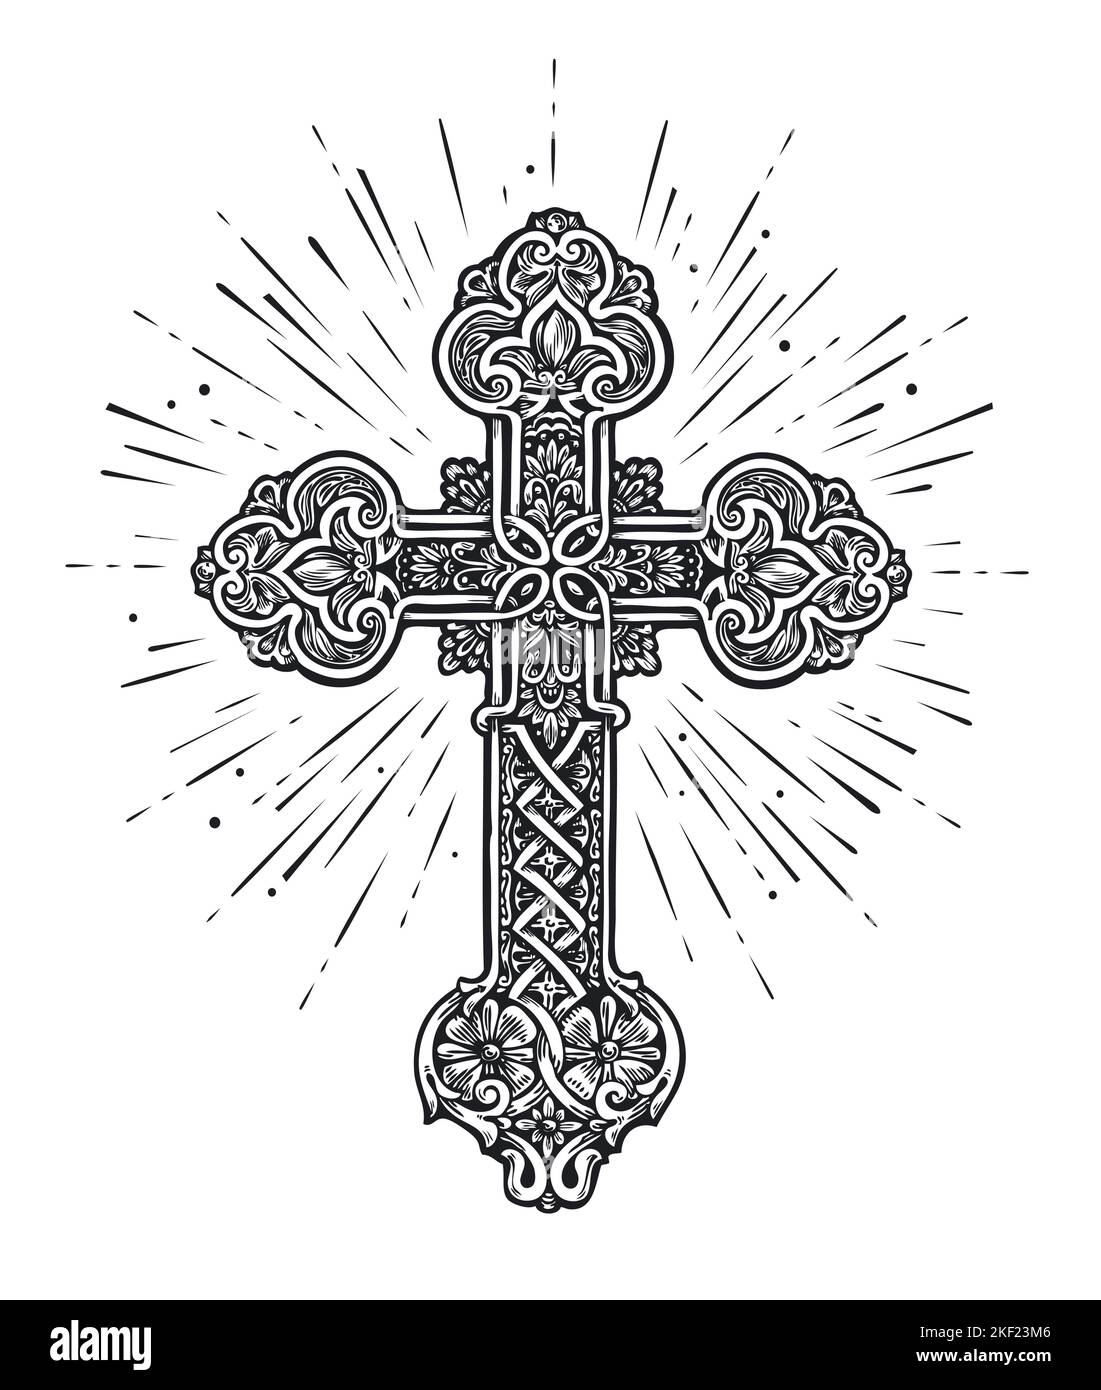 Cruz cristiana adornada. Iglesia, fe en Dios, símbolo de religión cristiana. Ilustración en estilo grabado vintage Ilustración del Vector